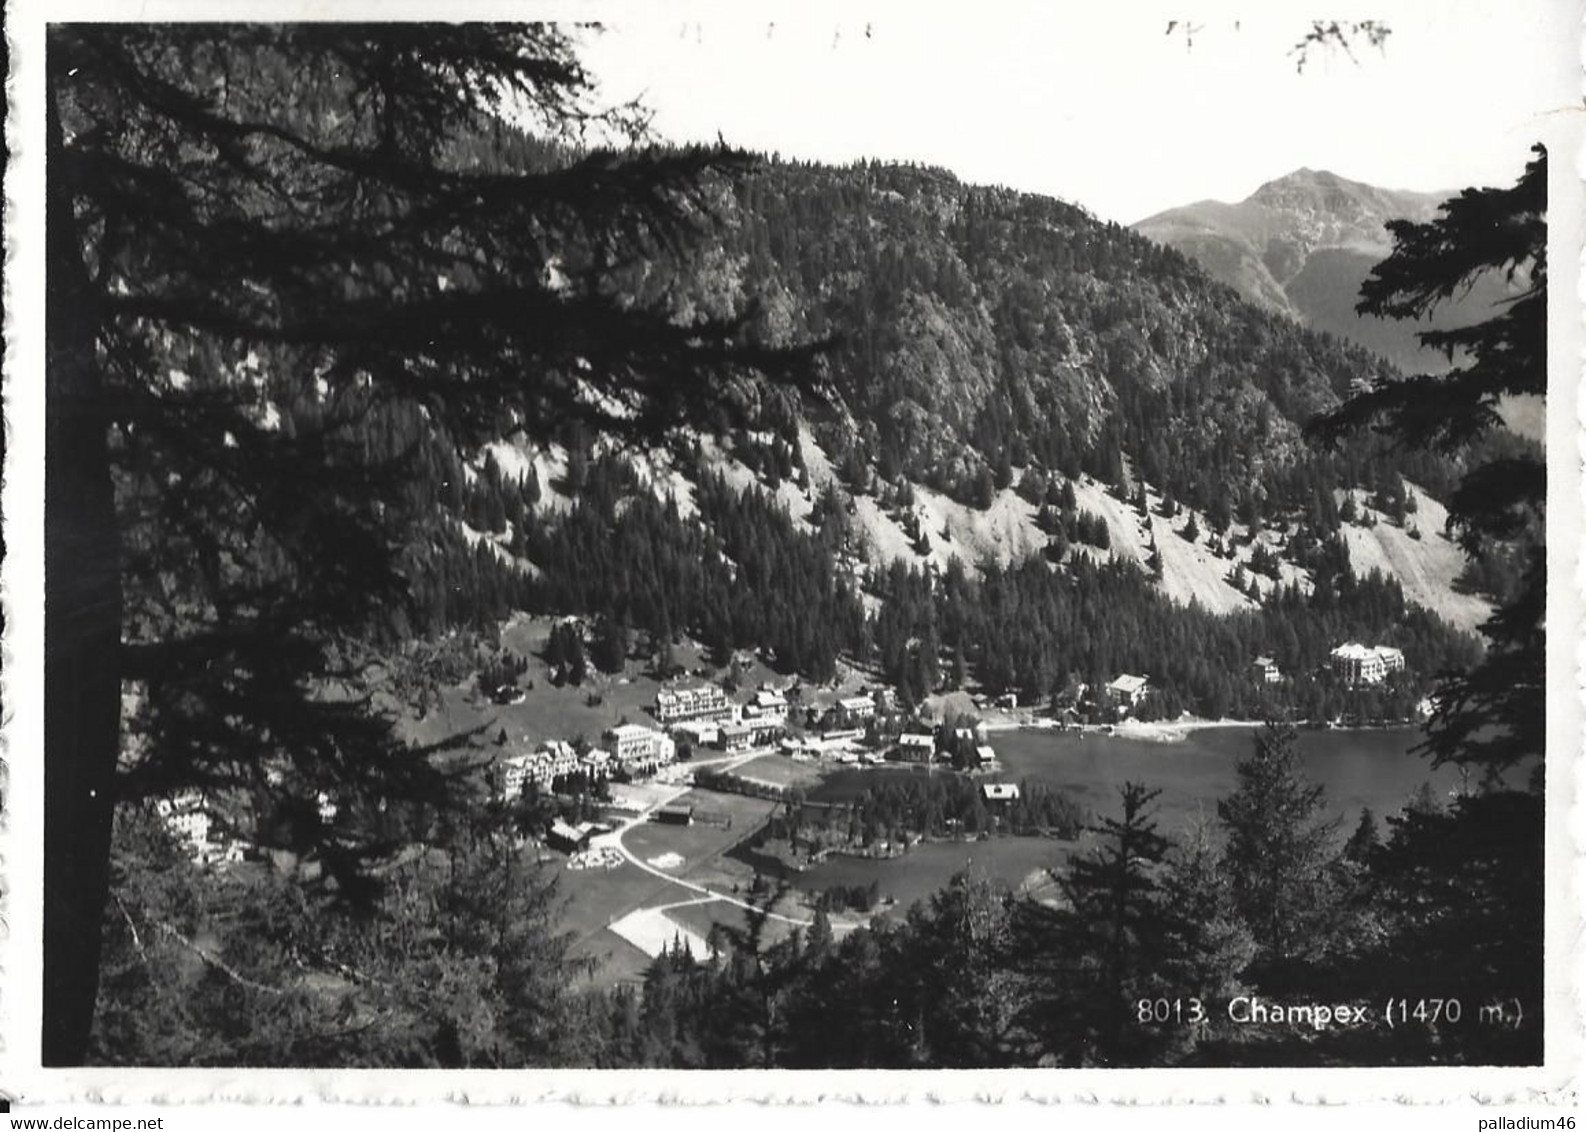 VALAIS  CHAMPEX Commune D'Orsières - Sté Graphique Neuchâtel No 8013  - Circulé Le 13.08.1952 - Orsières